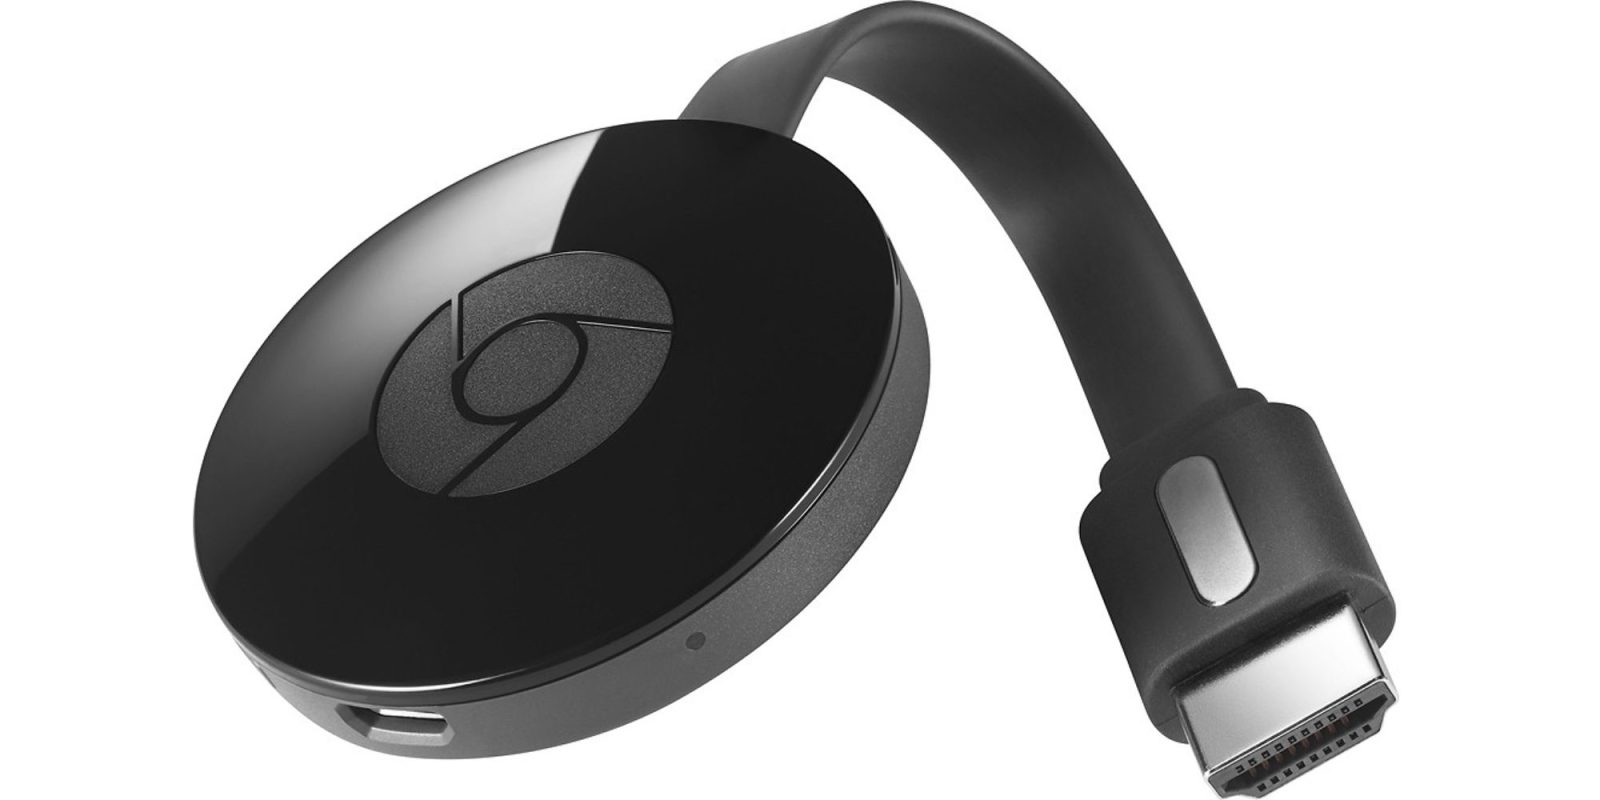 Ren og skær Skygge opretholde Chromecast speaker groups now supported w/ Google Home - 9to5Google